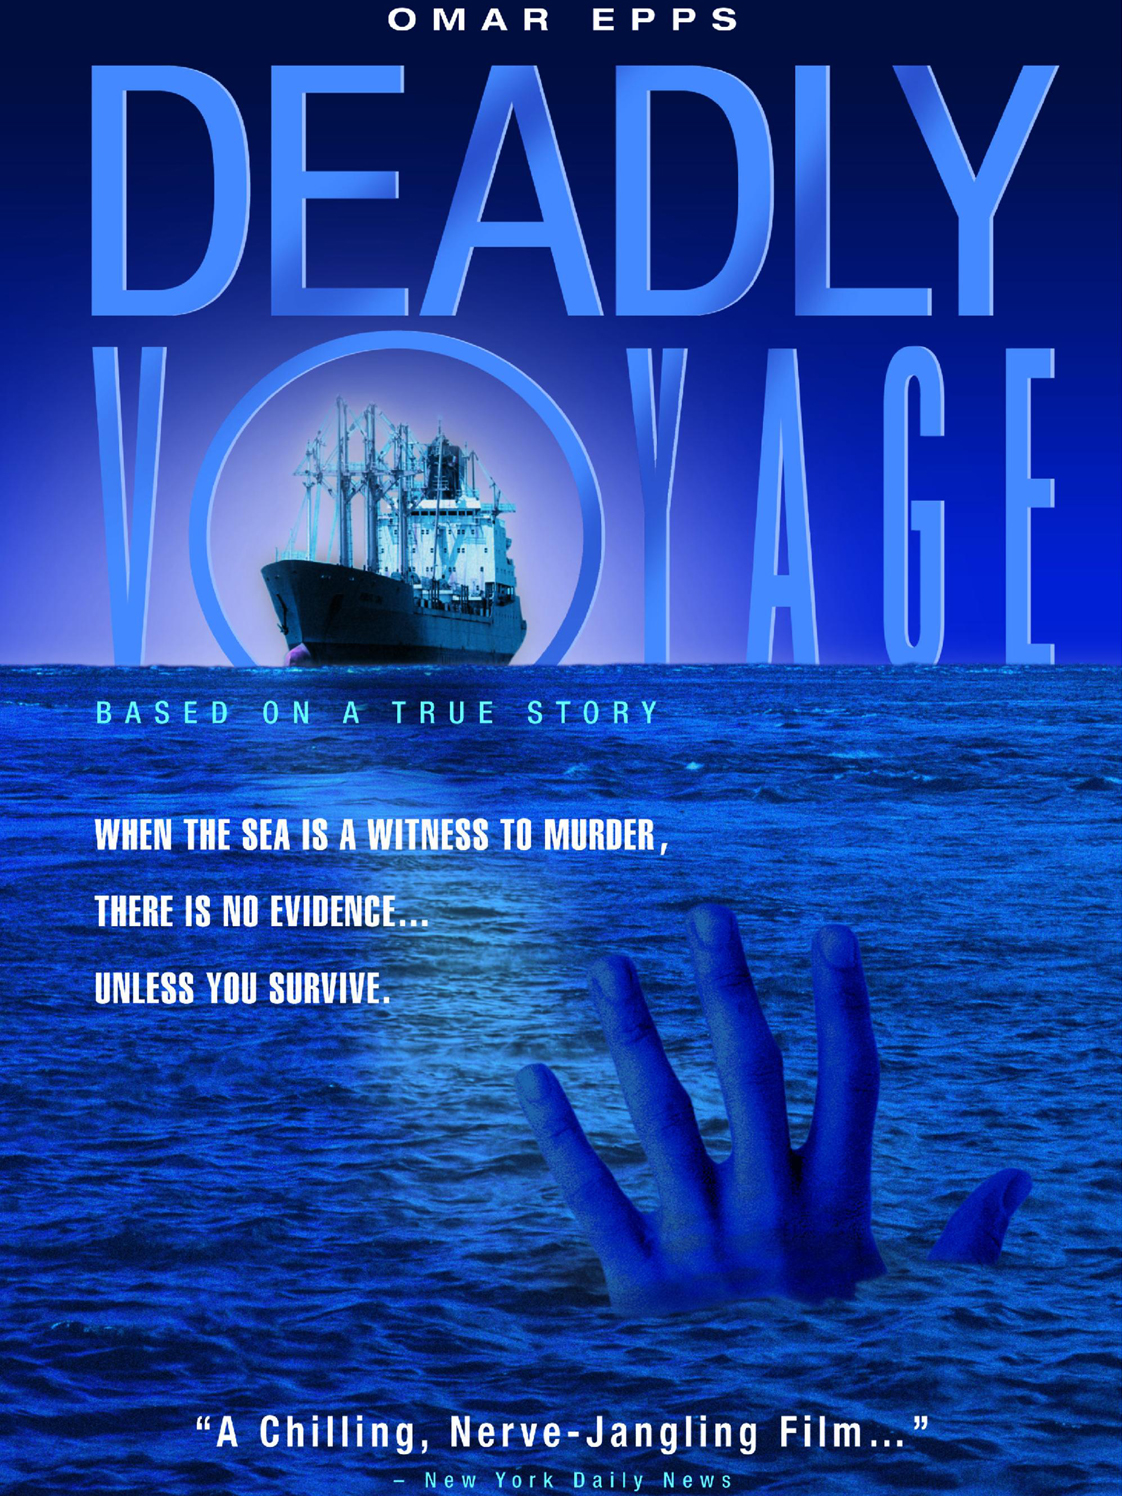 deadly voyage actors